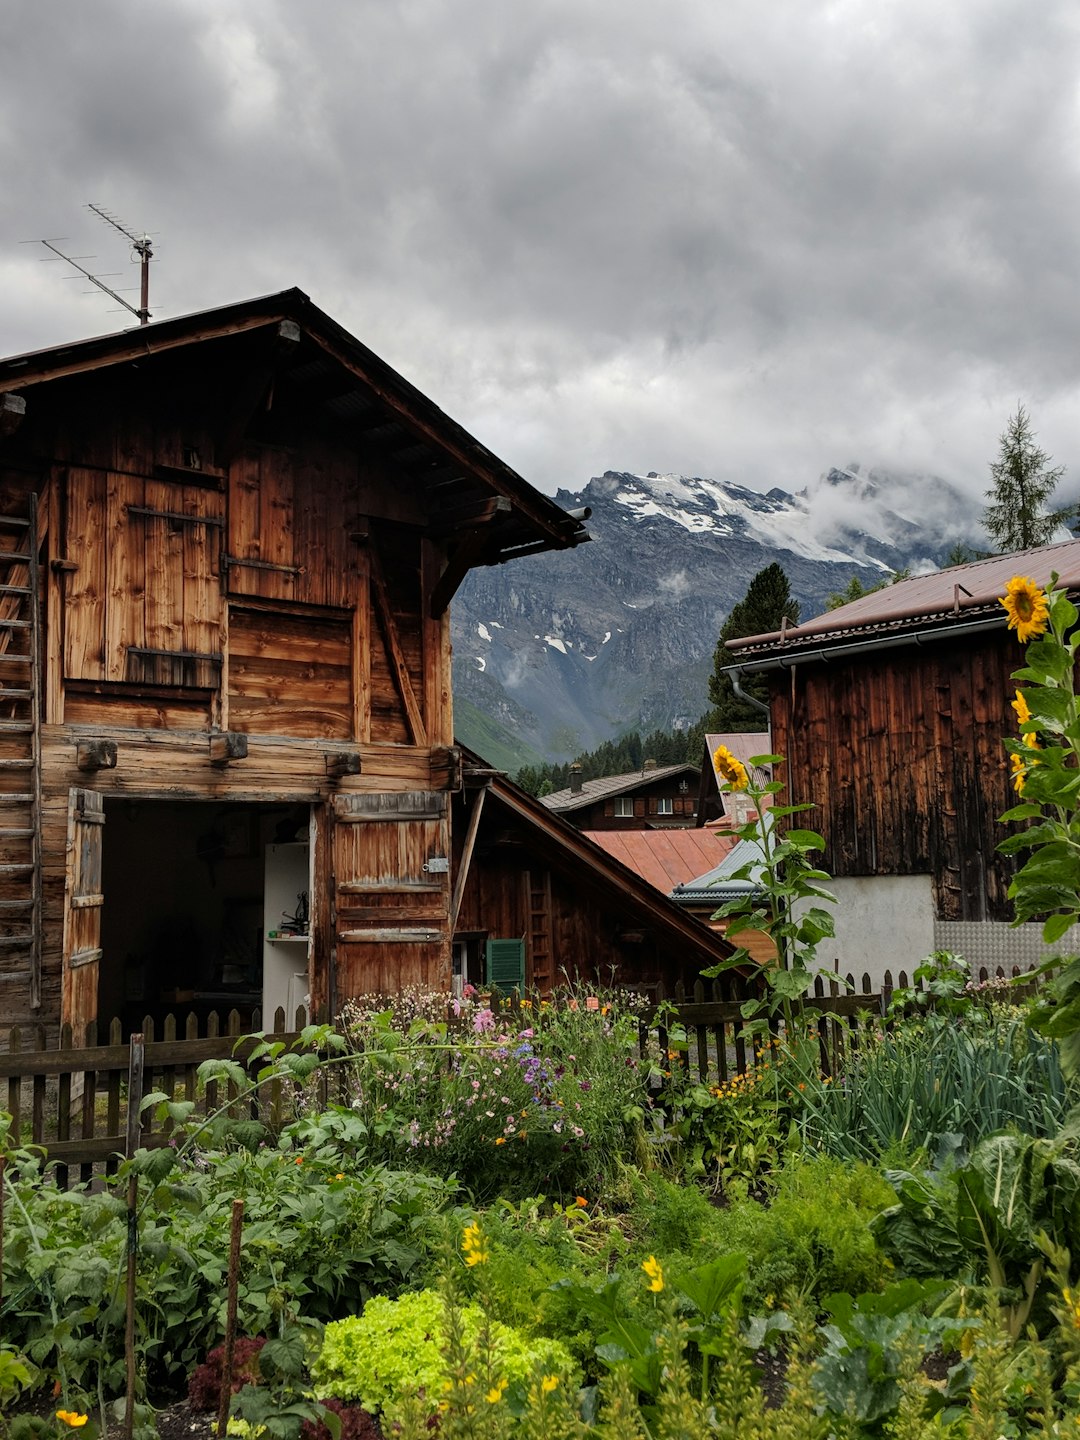 Log cabin photo spot Brunnen Grindelwald